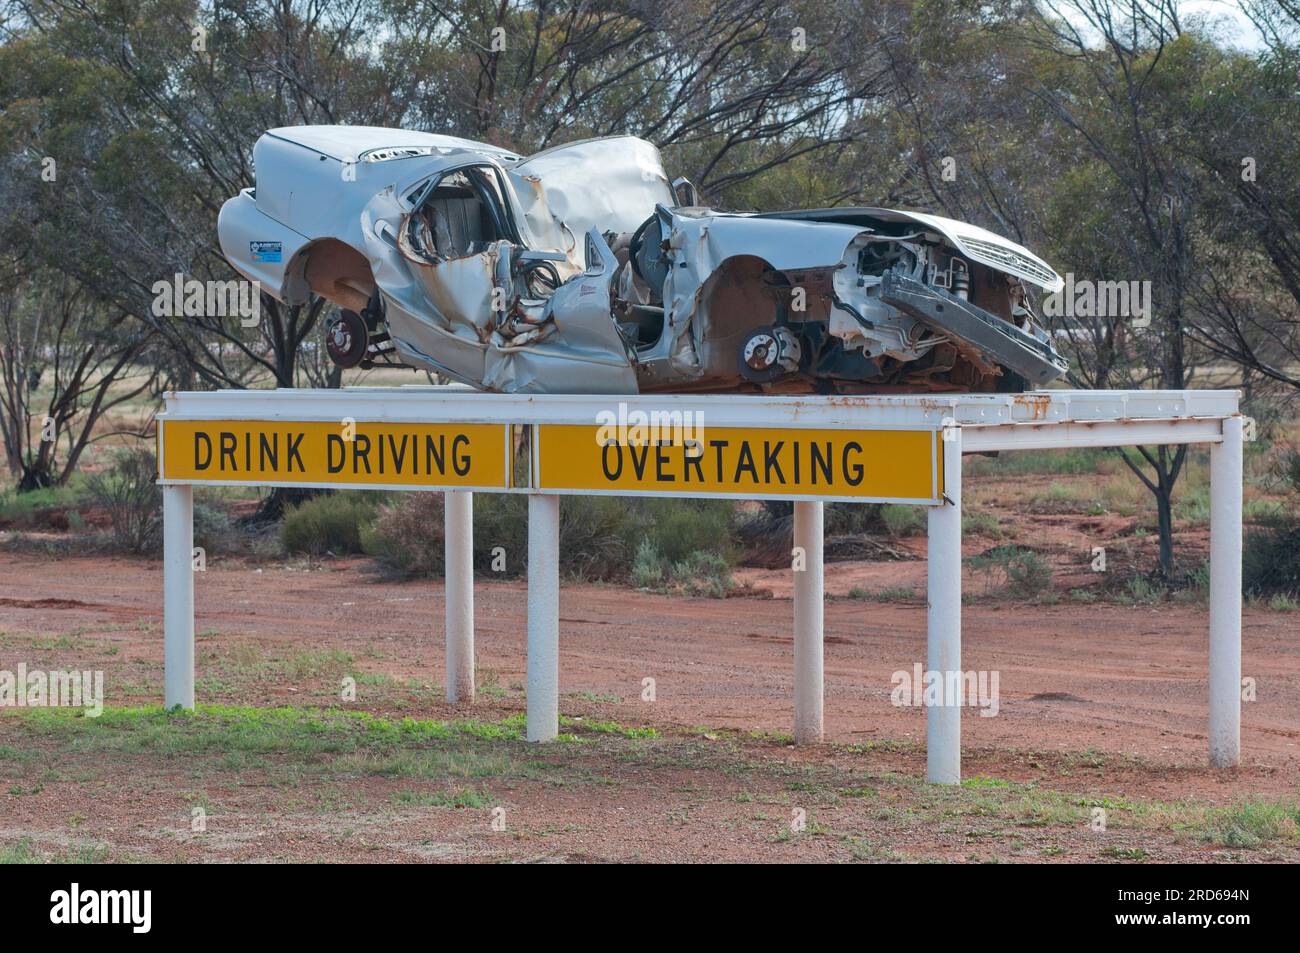 Une campagne australienne de sécurité routière montrant des épaves de voitures pour sensibiliser la sécurité aux dangers de la vitesse et de la conduite en état d'ivresse Banque D'Images